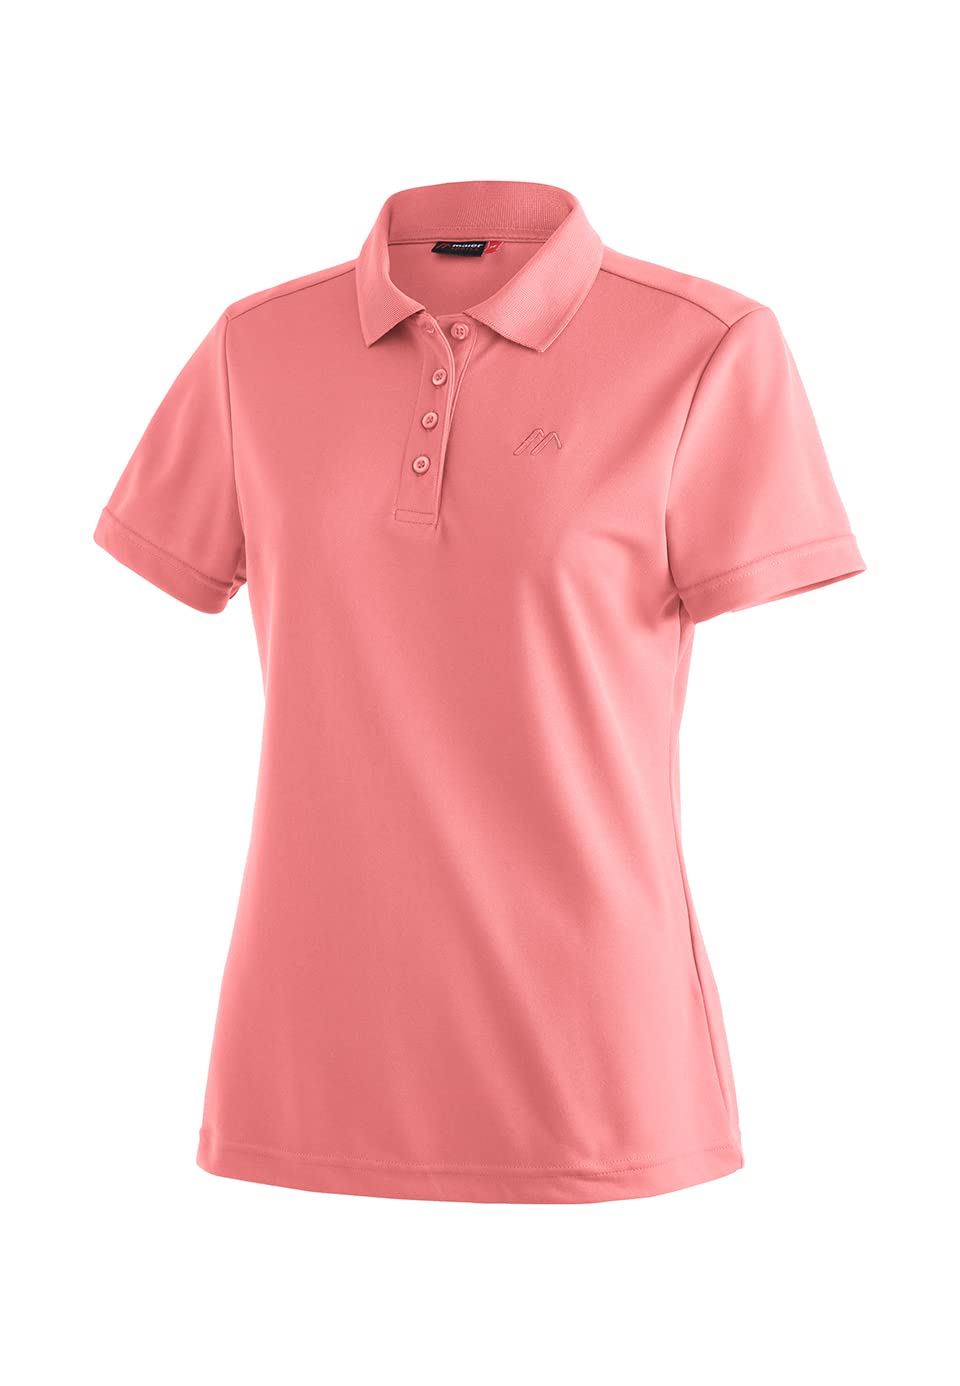 Maier Sports Damen T-Shirt Waltraud, einfarbiges Kurzarm Piqué-Shirt